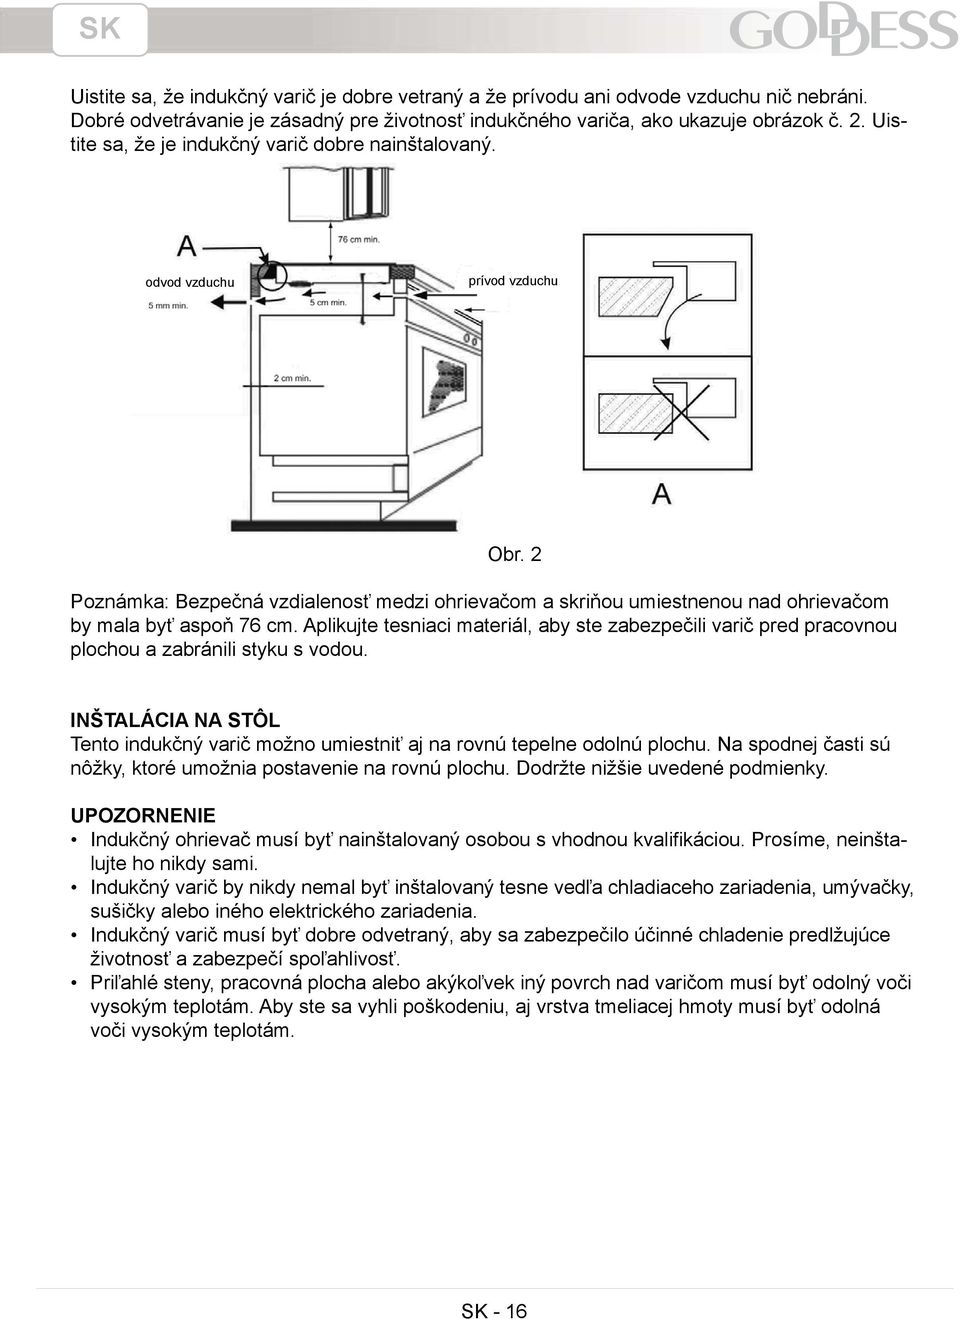 Aplikujte tesniaci materiál, aby ste zabezpečili varič pred pracovnou plochou a zabránili styku s vodou. INŠTALÁCIA NA STÔL Tento indukčný varič možno umiestniť aj na rovnú tepelne odolnú plochu.